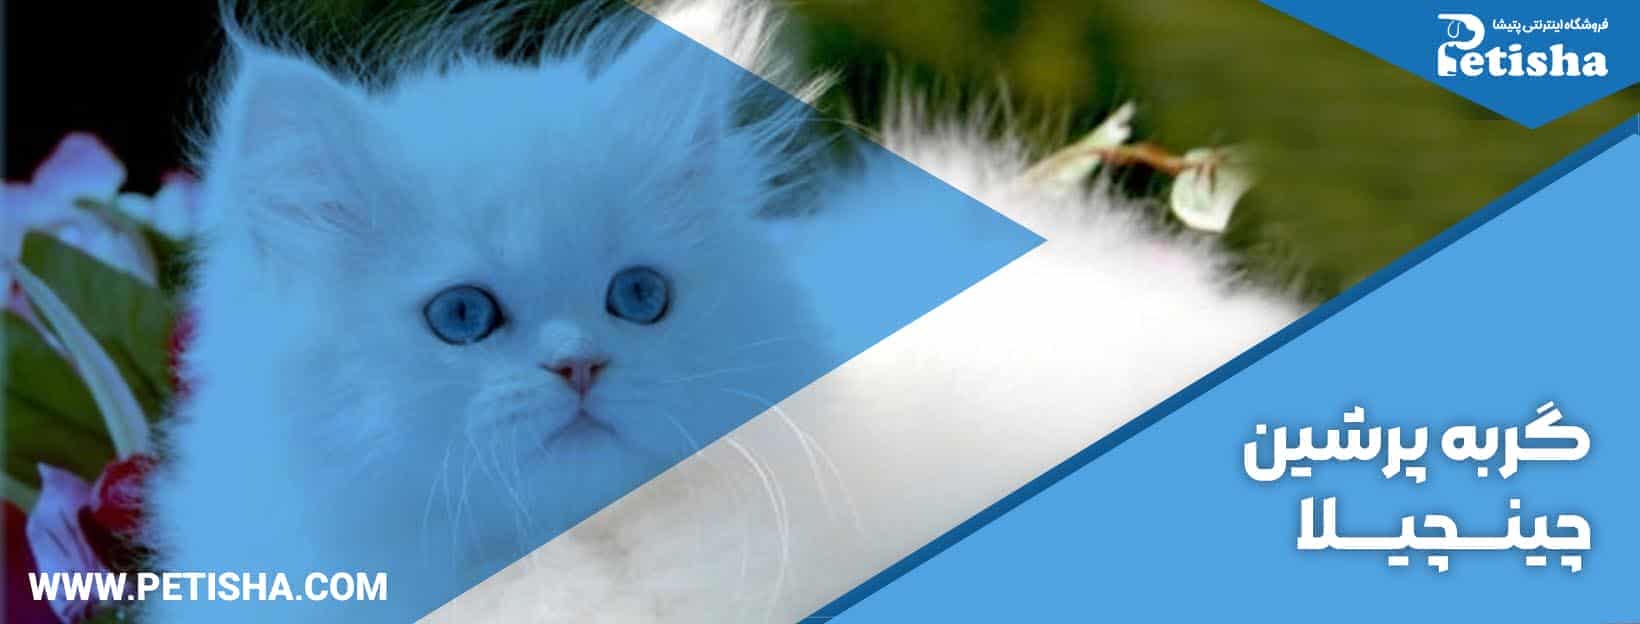 نگهداری گربه پرشین | نحوه نگهداری و خصوصیات انواع گربه پرشین